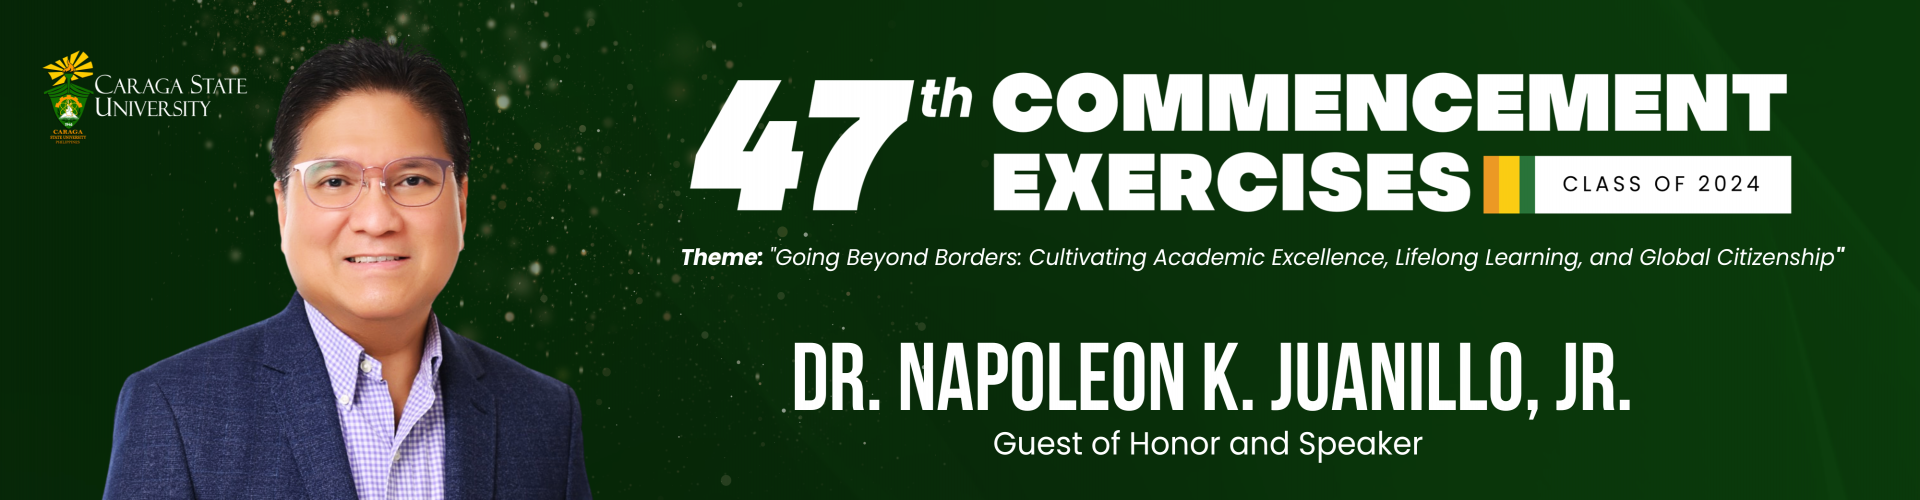 47th Commencement Exercises Speaker Dr. Napoleon K. Juanillo, Jr.